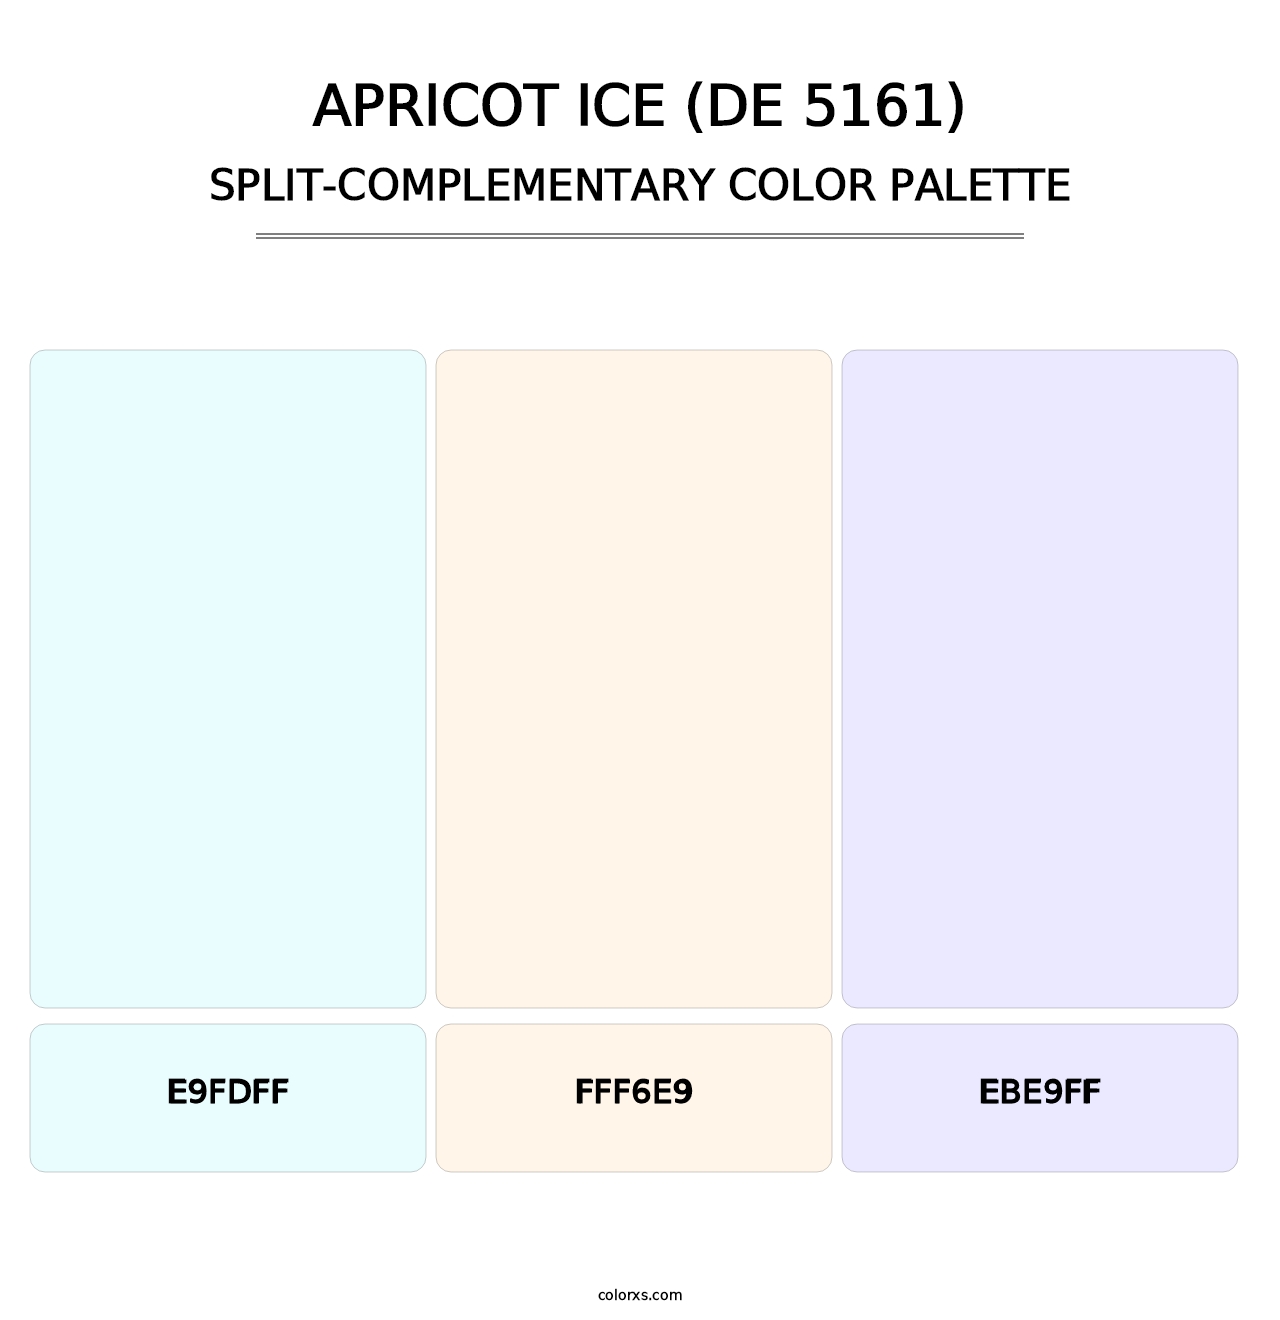 Apricot Ice (DE 5161) - Split-Complementary Color Palette